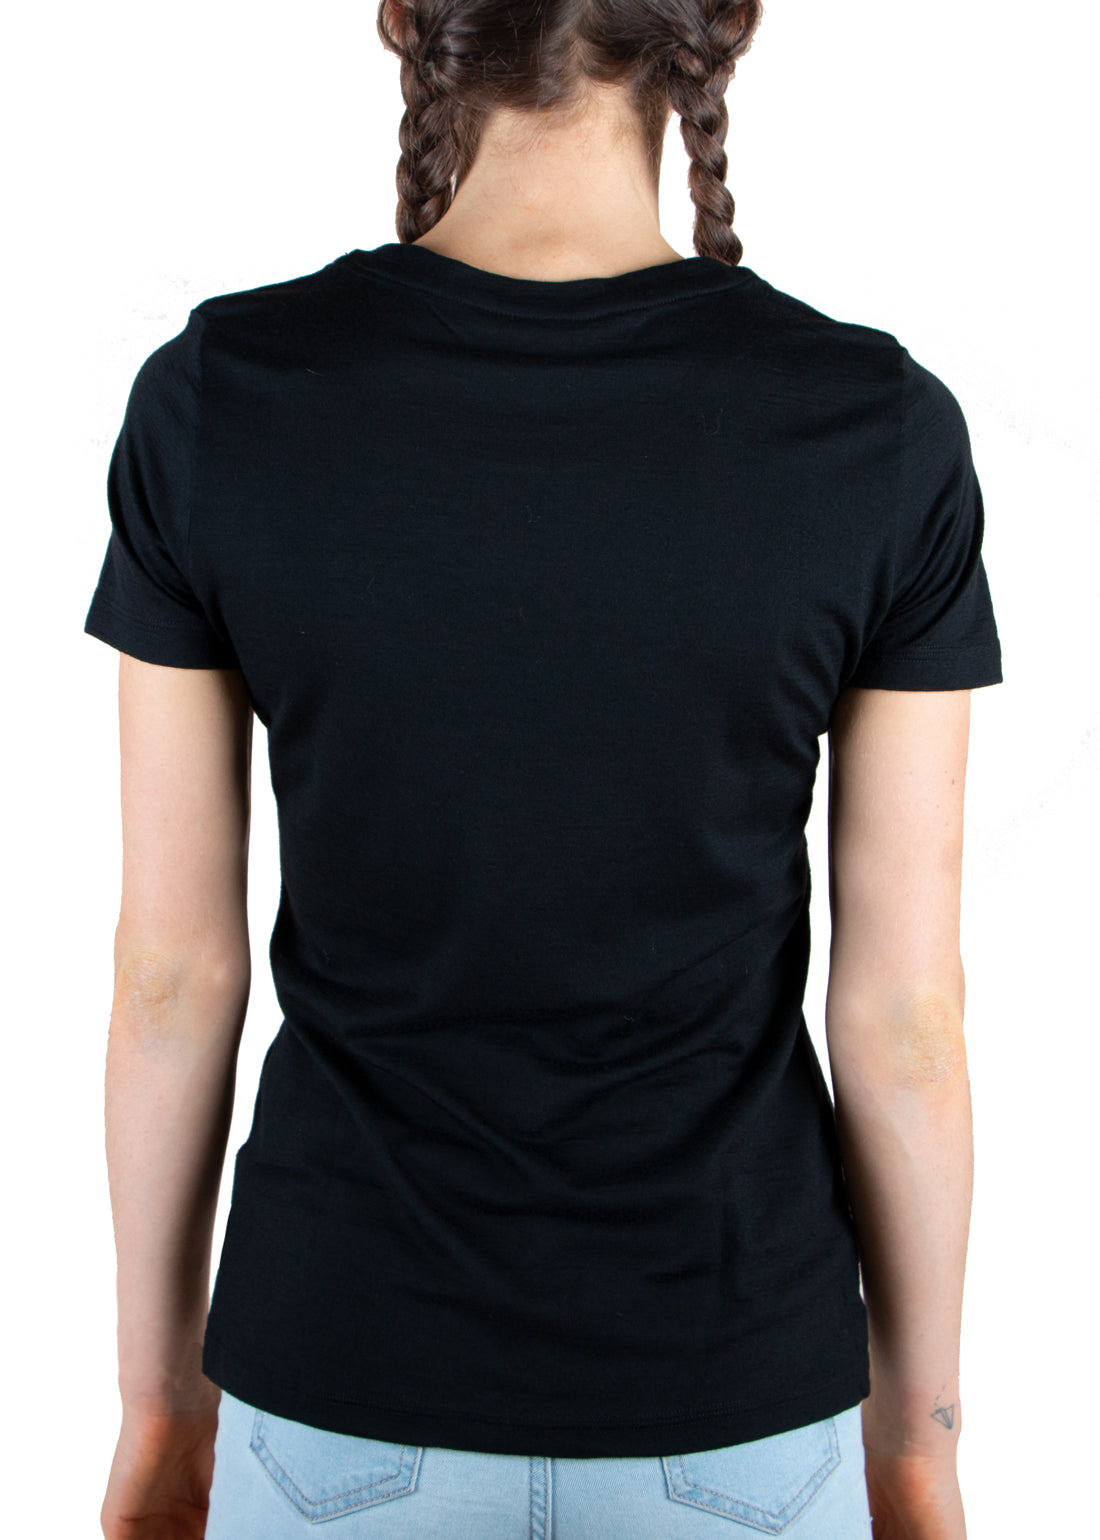 Merino 365 Women's Crew T-Shirt Short Sleeve, Black